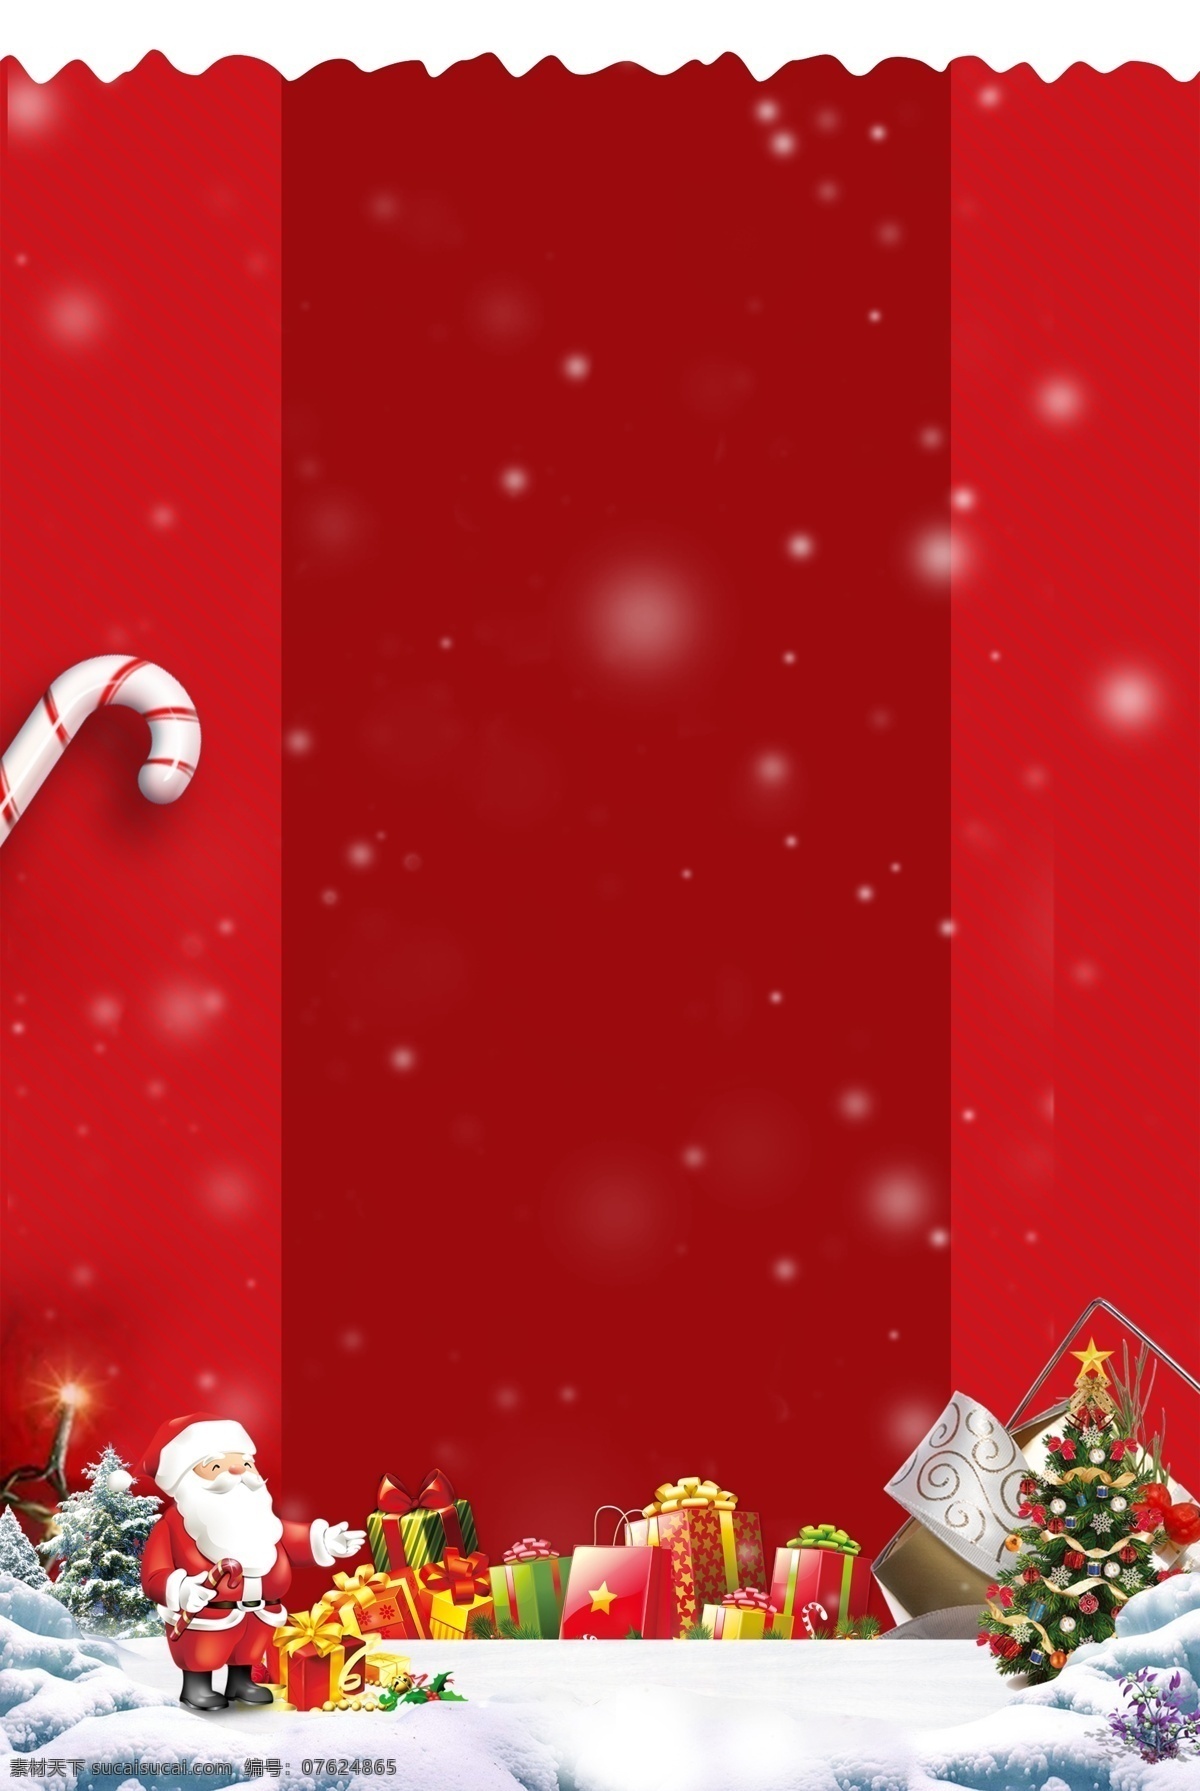 红色 2018 圣诞节 促销 背景 节日 装饰 贺卡 圣诞老人 圣诞大促 圣诞图 背景设计 圣诞贺卡 圣诞元旦背景 圣诞节促销 节日促销